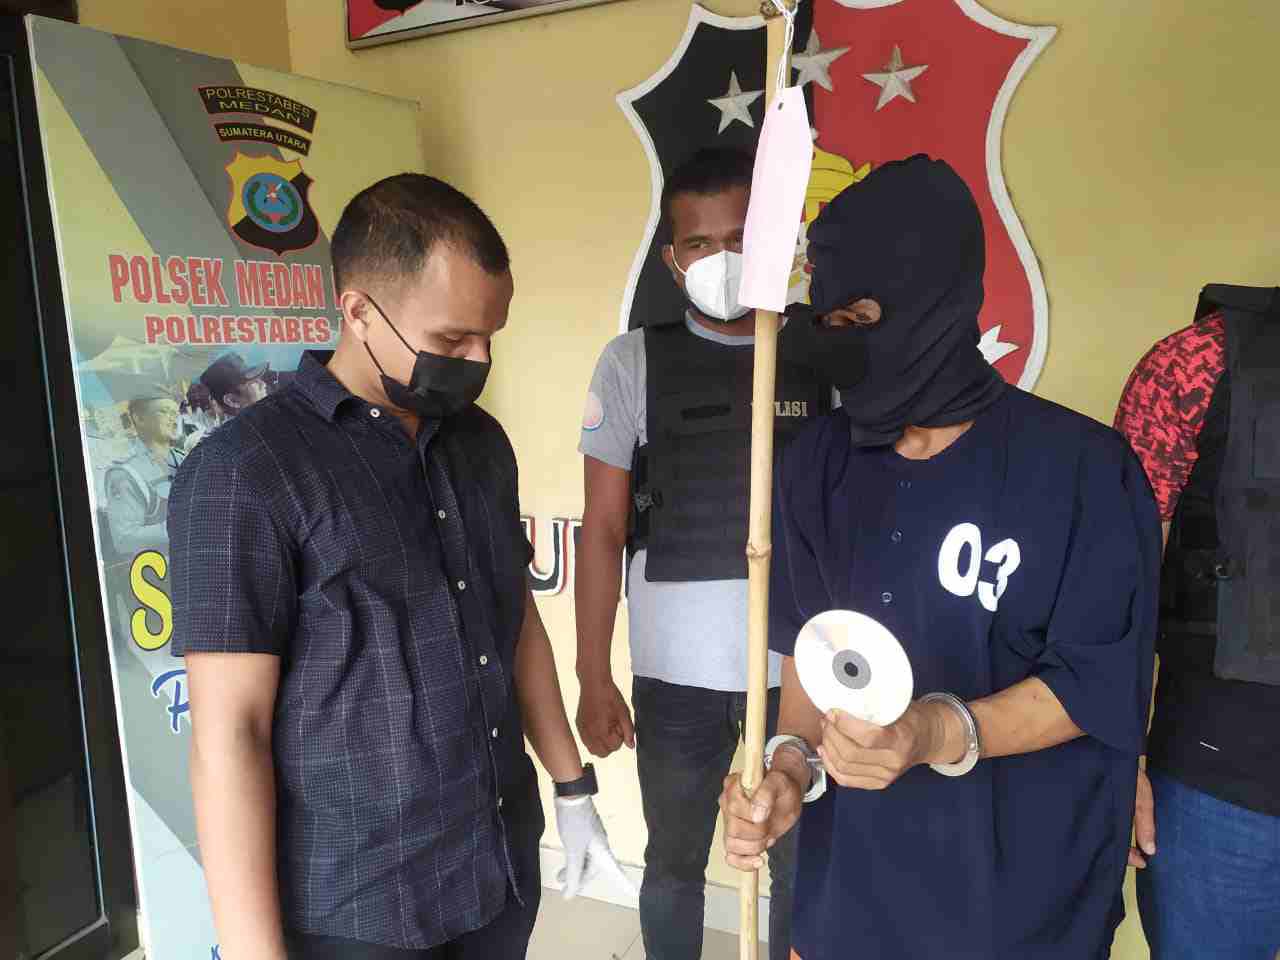 Polsek Medan Helvetia Press Rilis Kasus Pencurian Dengan Menggunakan Sepotong Bambu